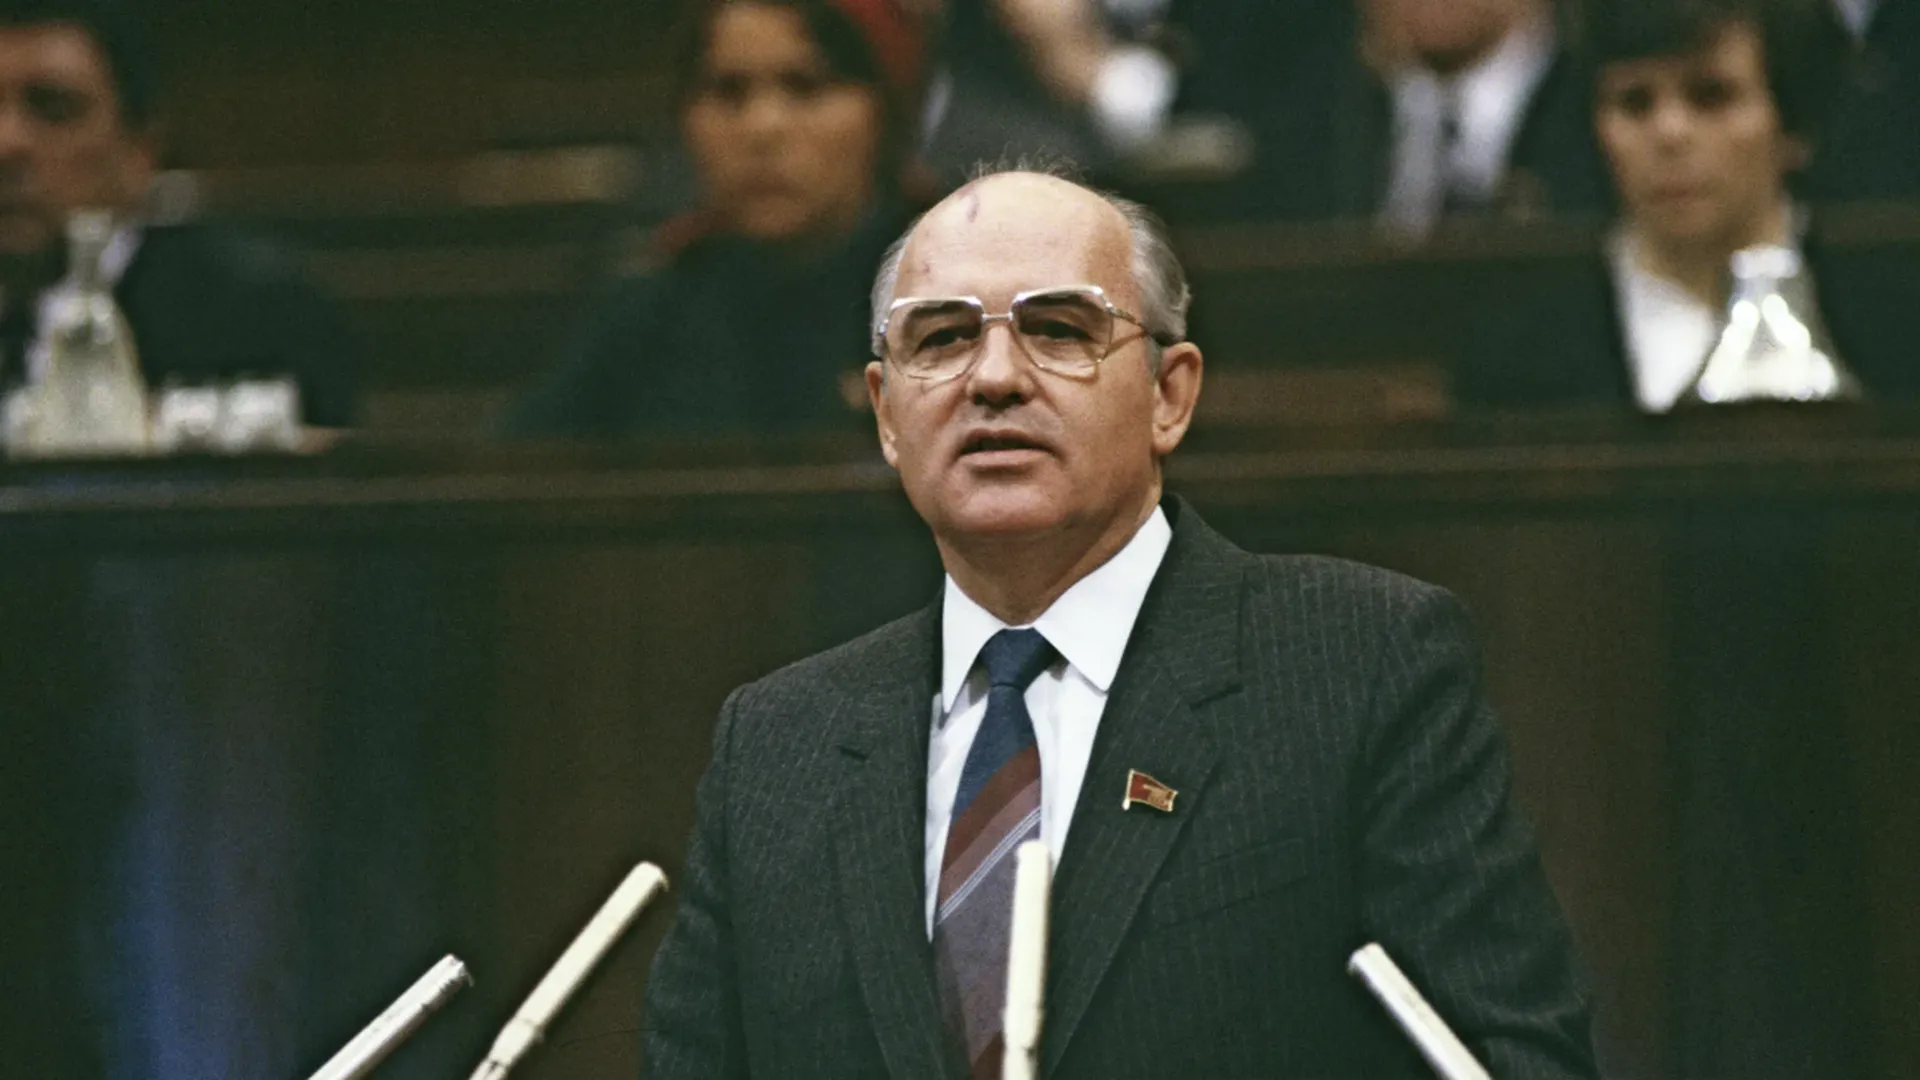 «Умел найти общий язык с людьми». Горбачев не побоялся выйти к толпе протестующих в 1991 году